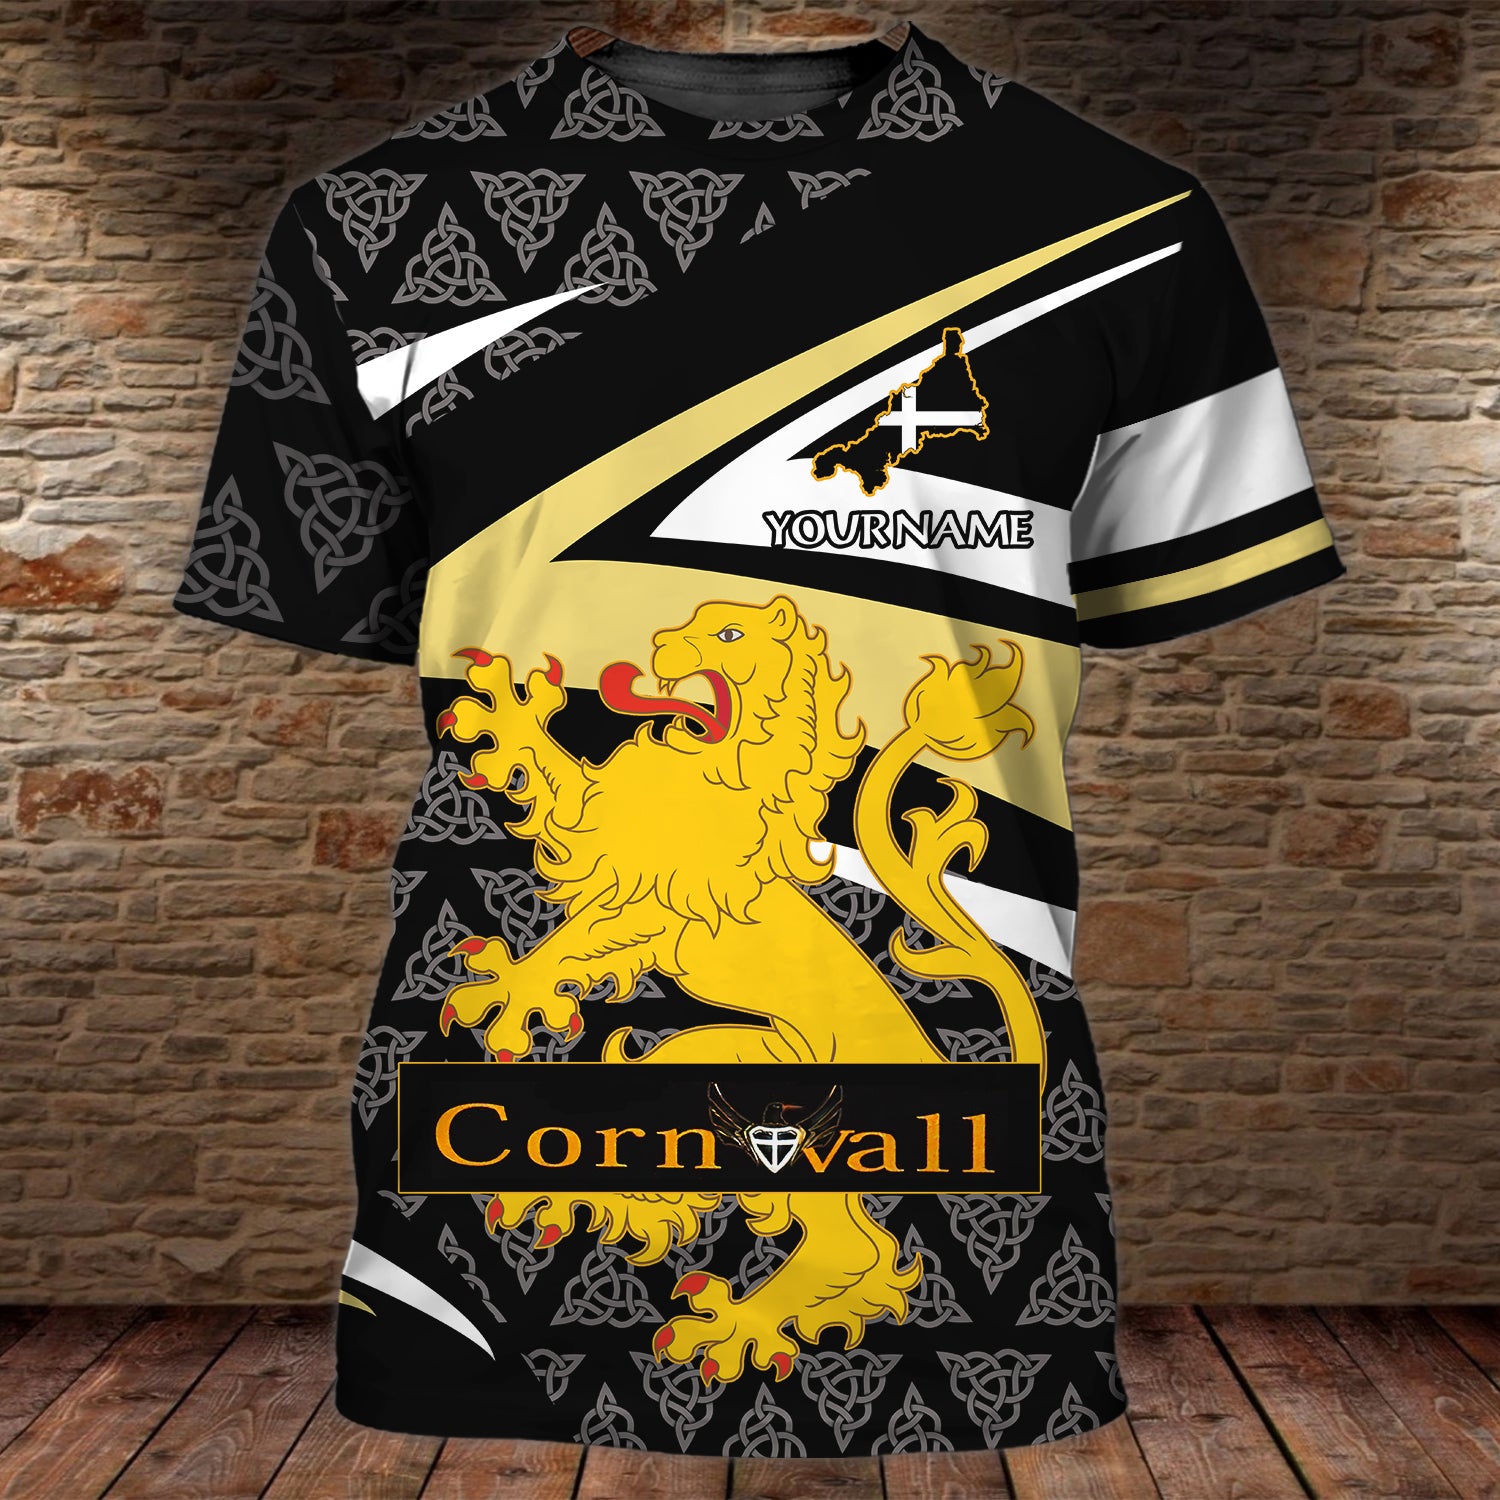 Cornwall 11 - Personalized Name 3D Tshirt - QB95